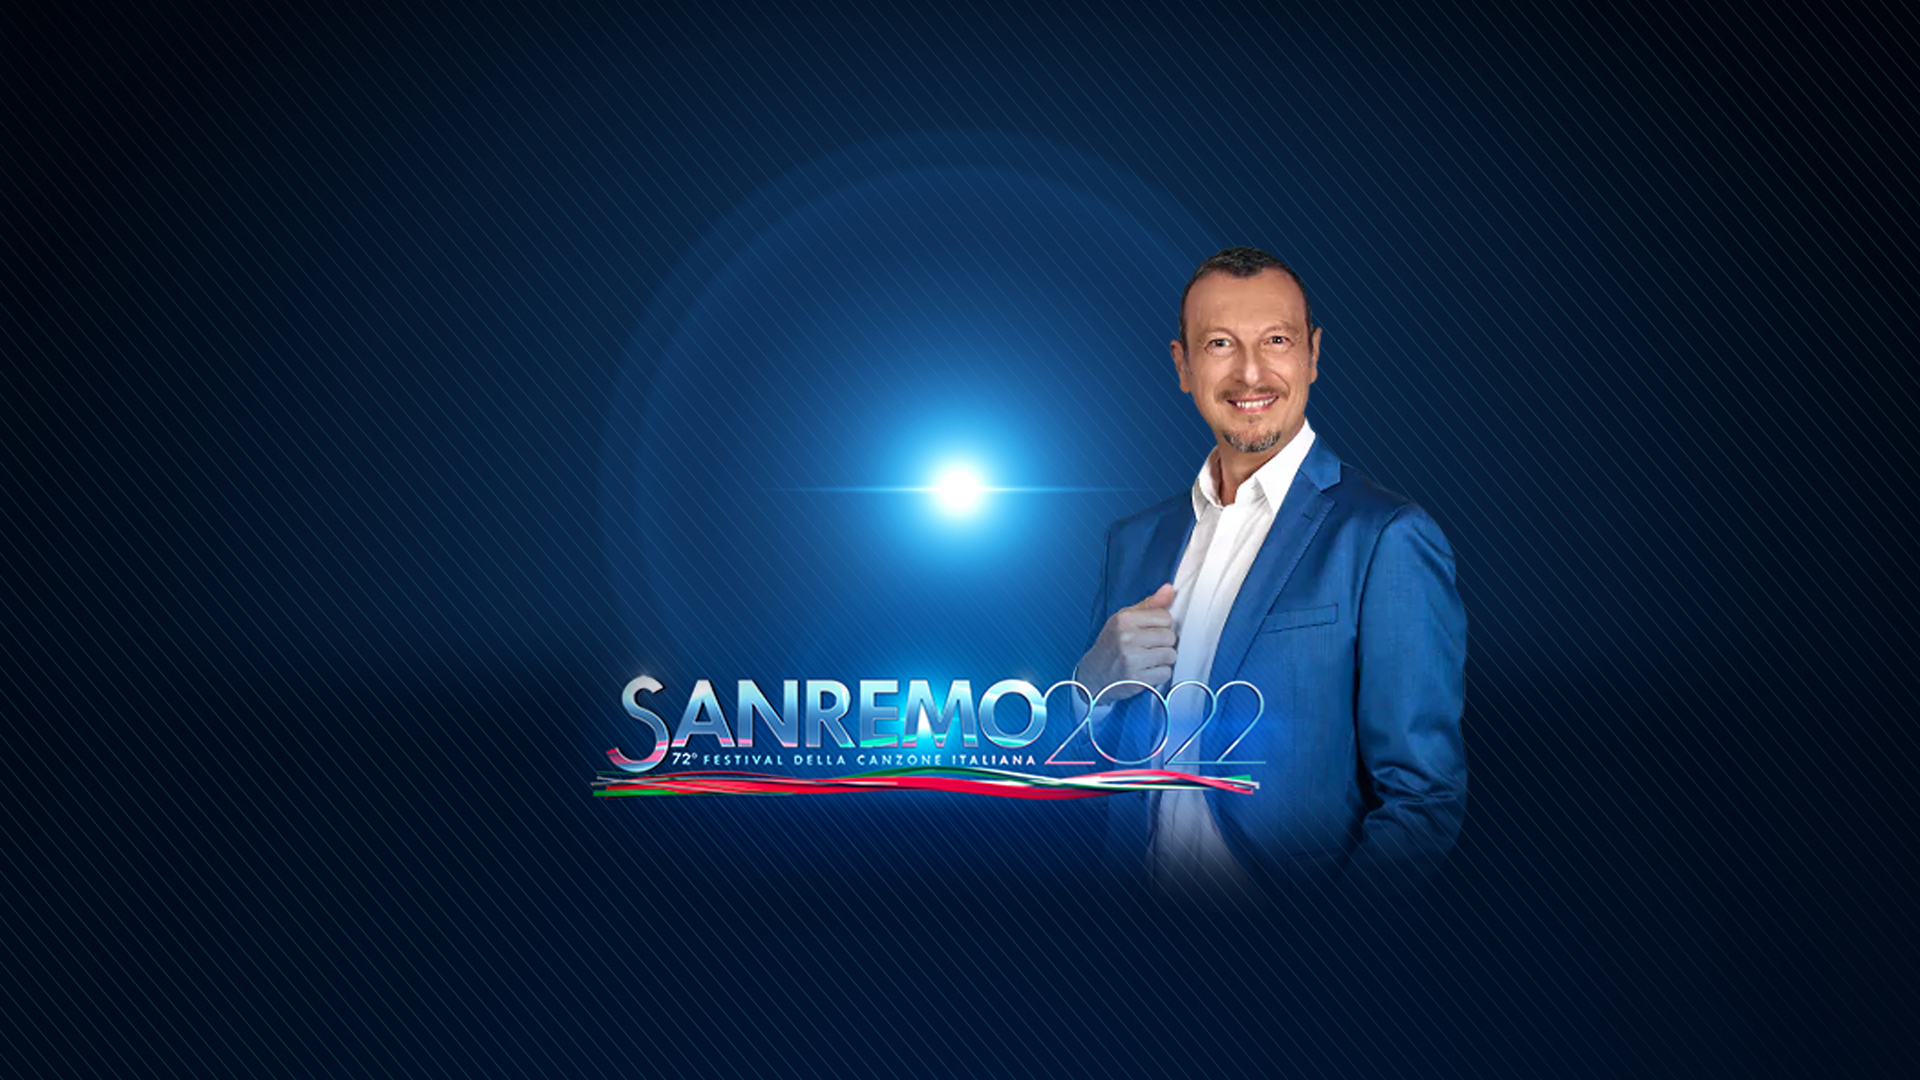 La RAI da a conocer las fechas oficiales de Sanremo 2022